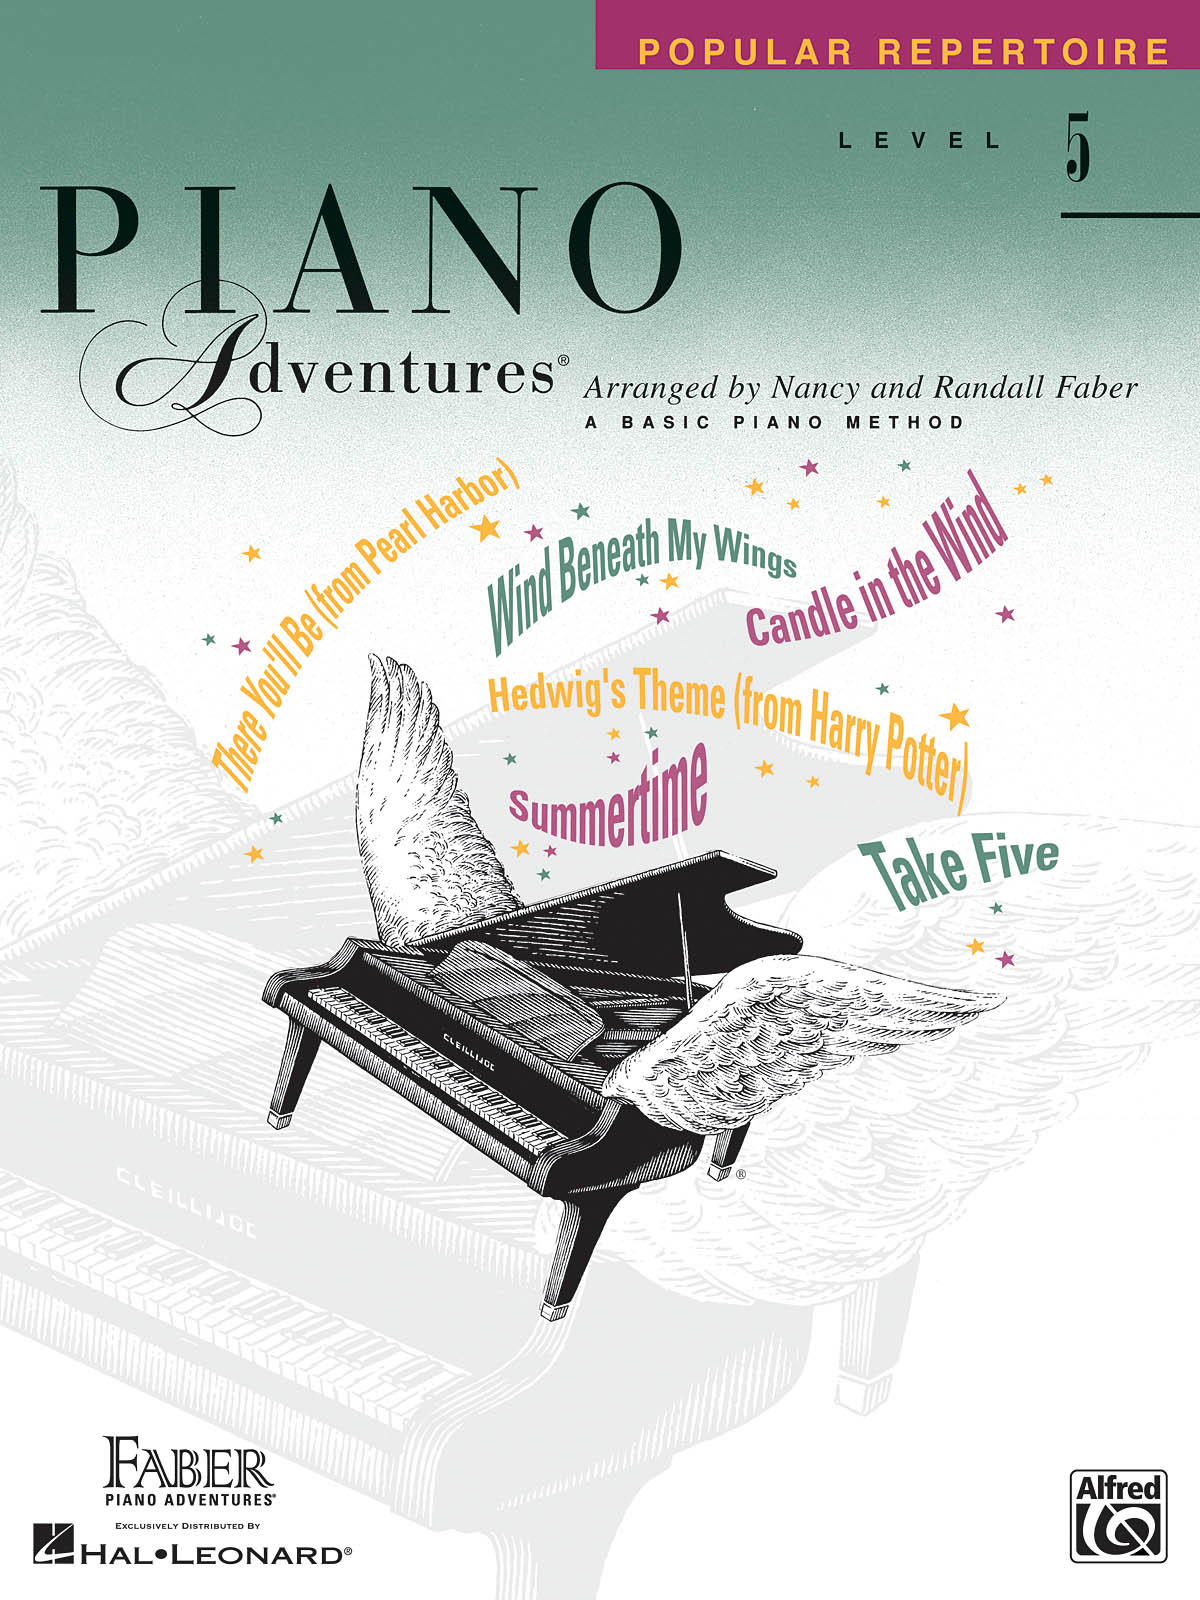 Piano Adventures Level 5 - Popular Repertoire Book učebnice pro klavír